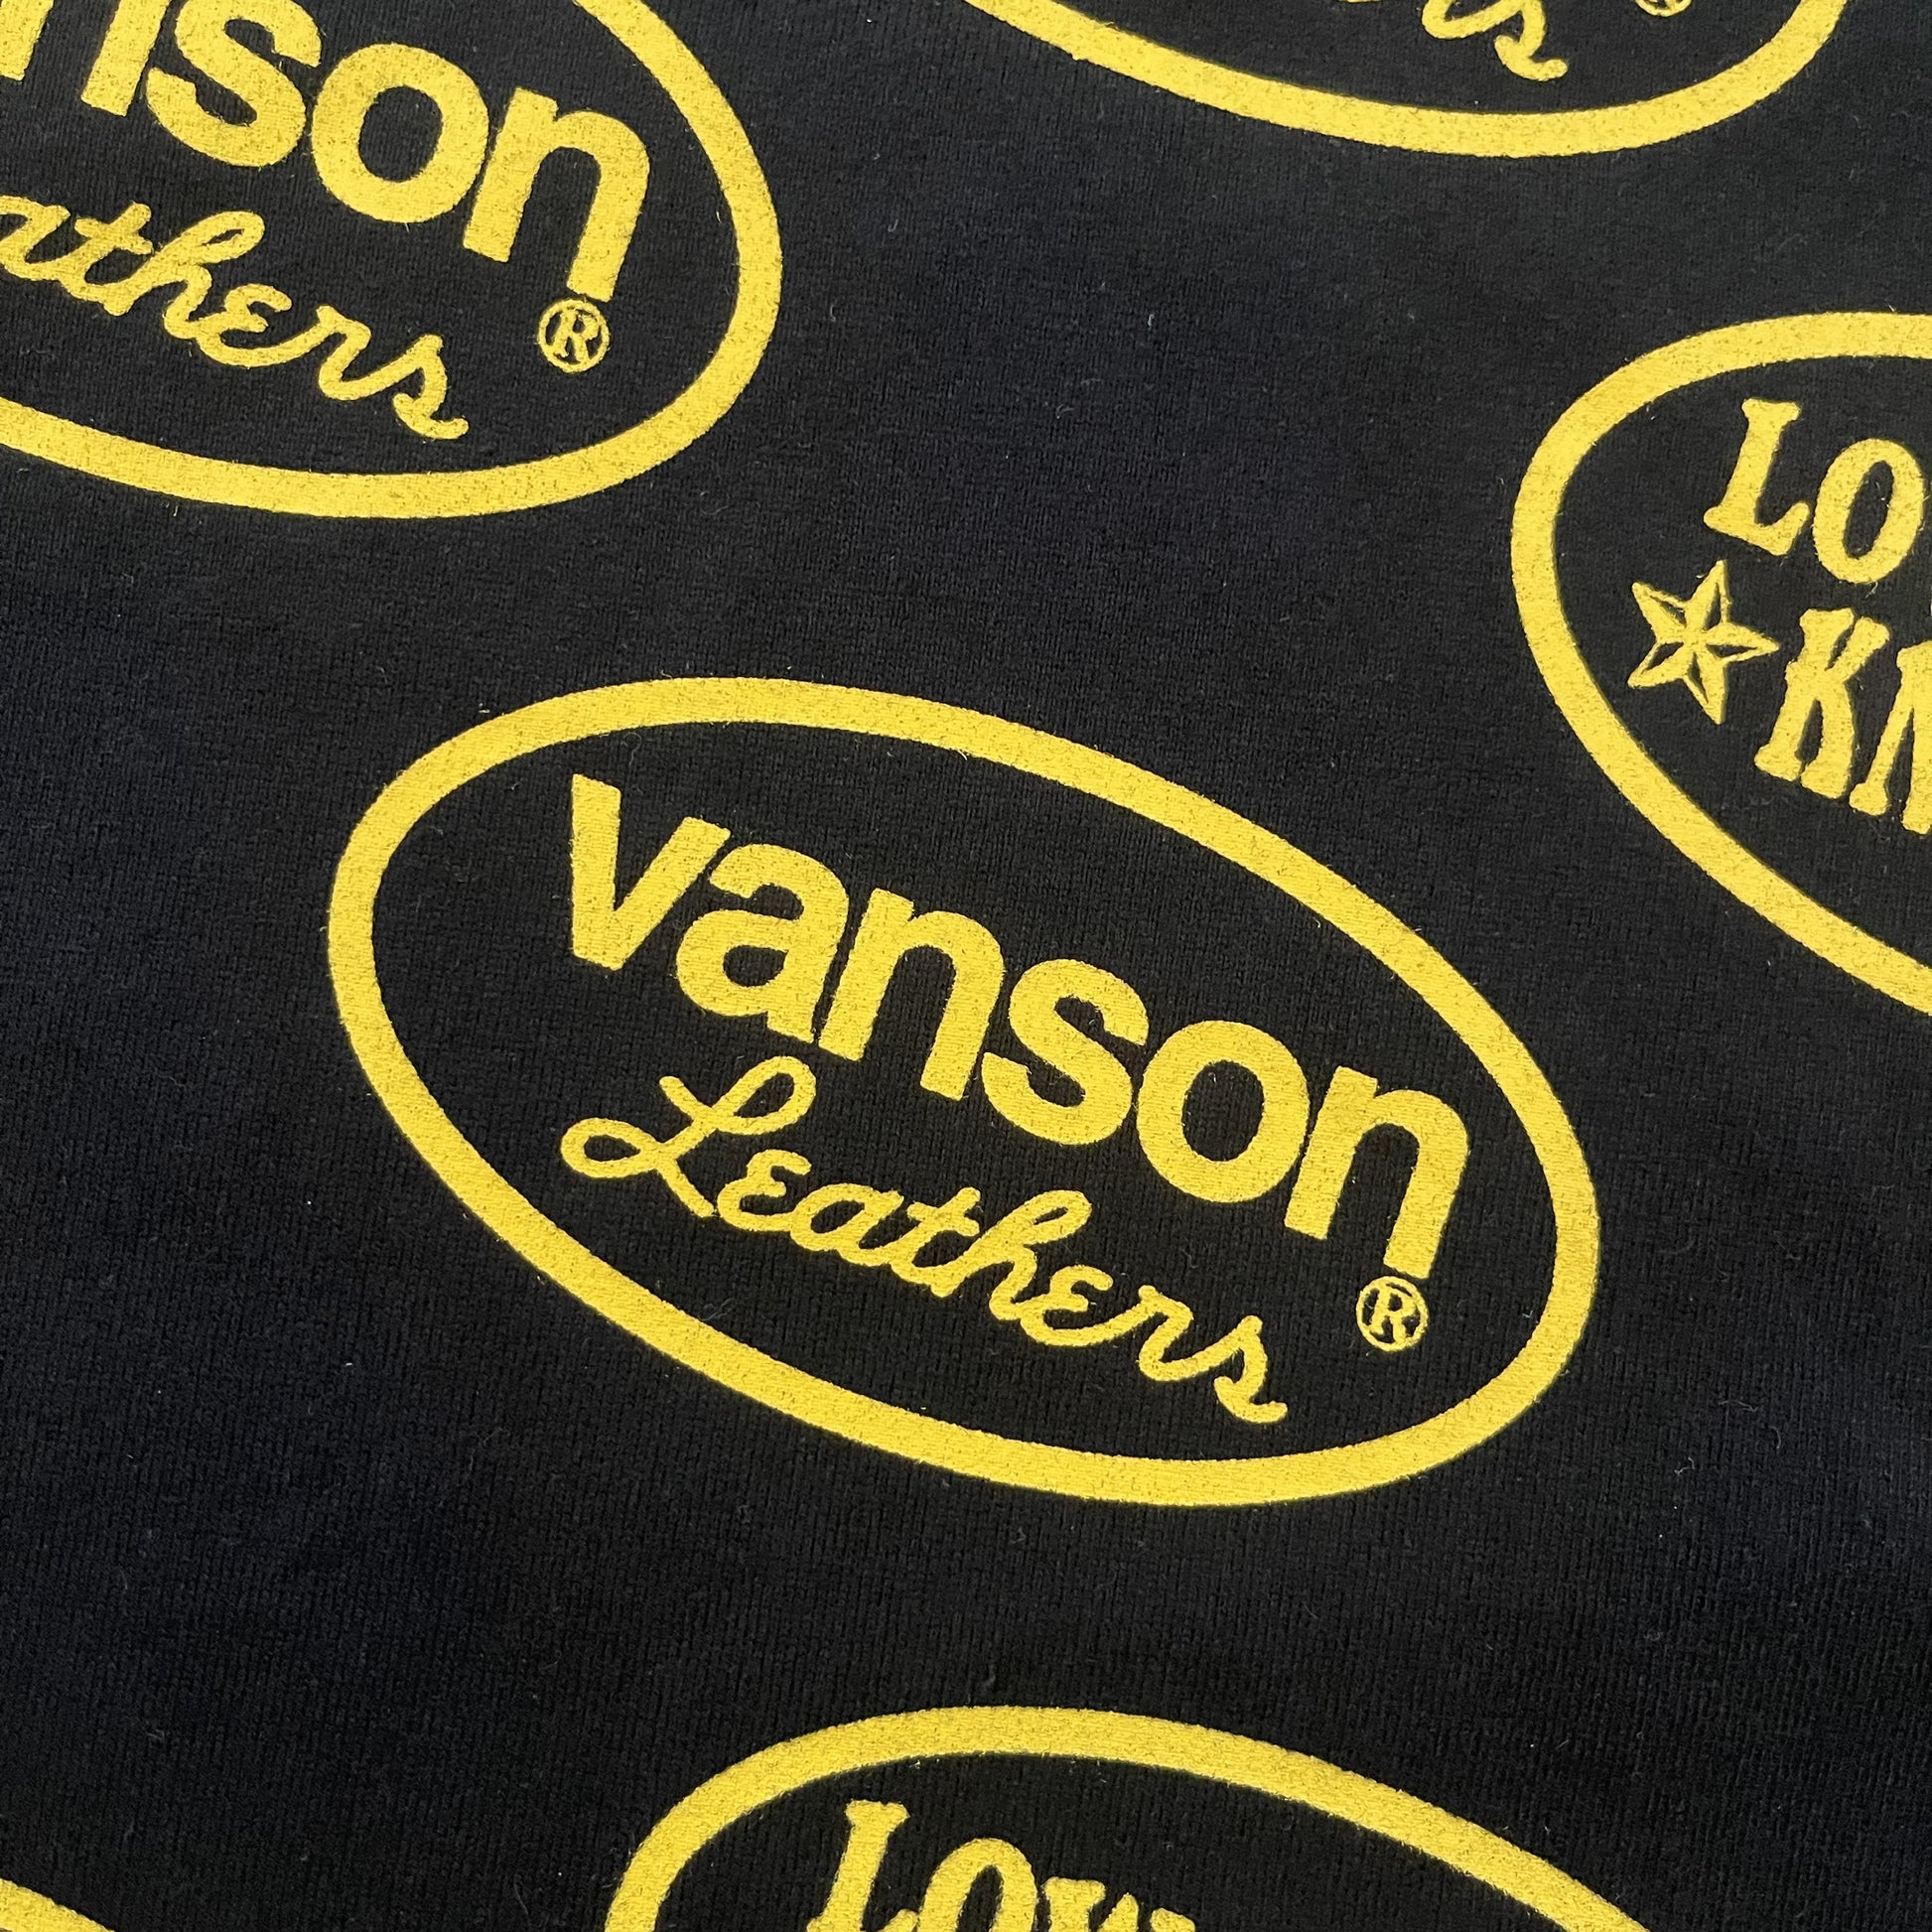 Vanson Leathers x Low Blow Knuckle Logo T-Shirt